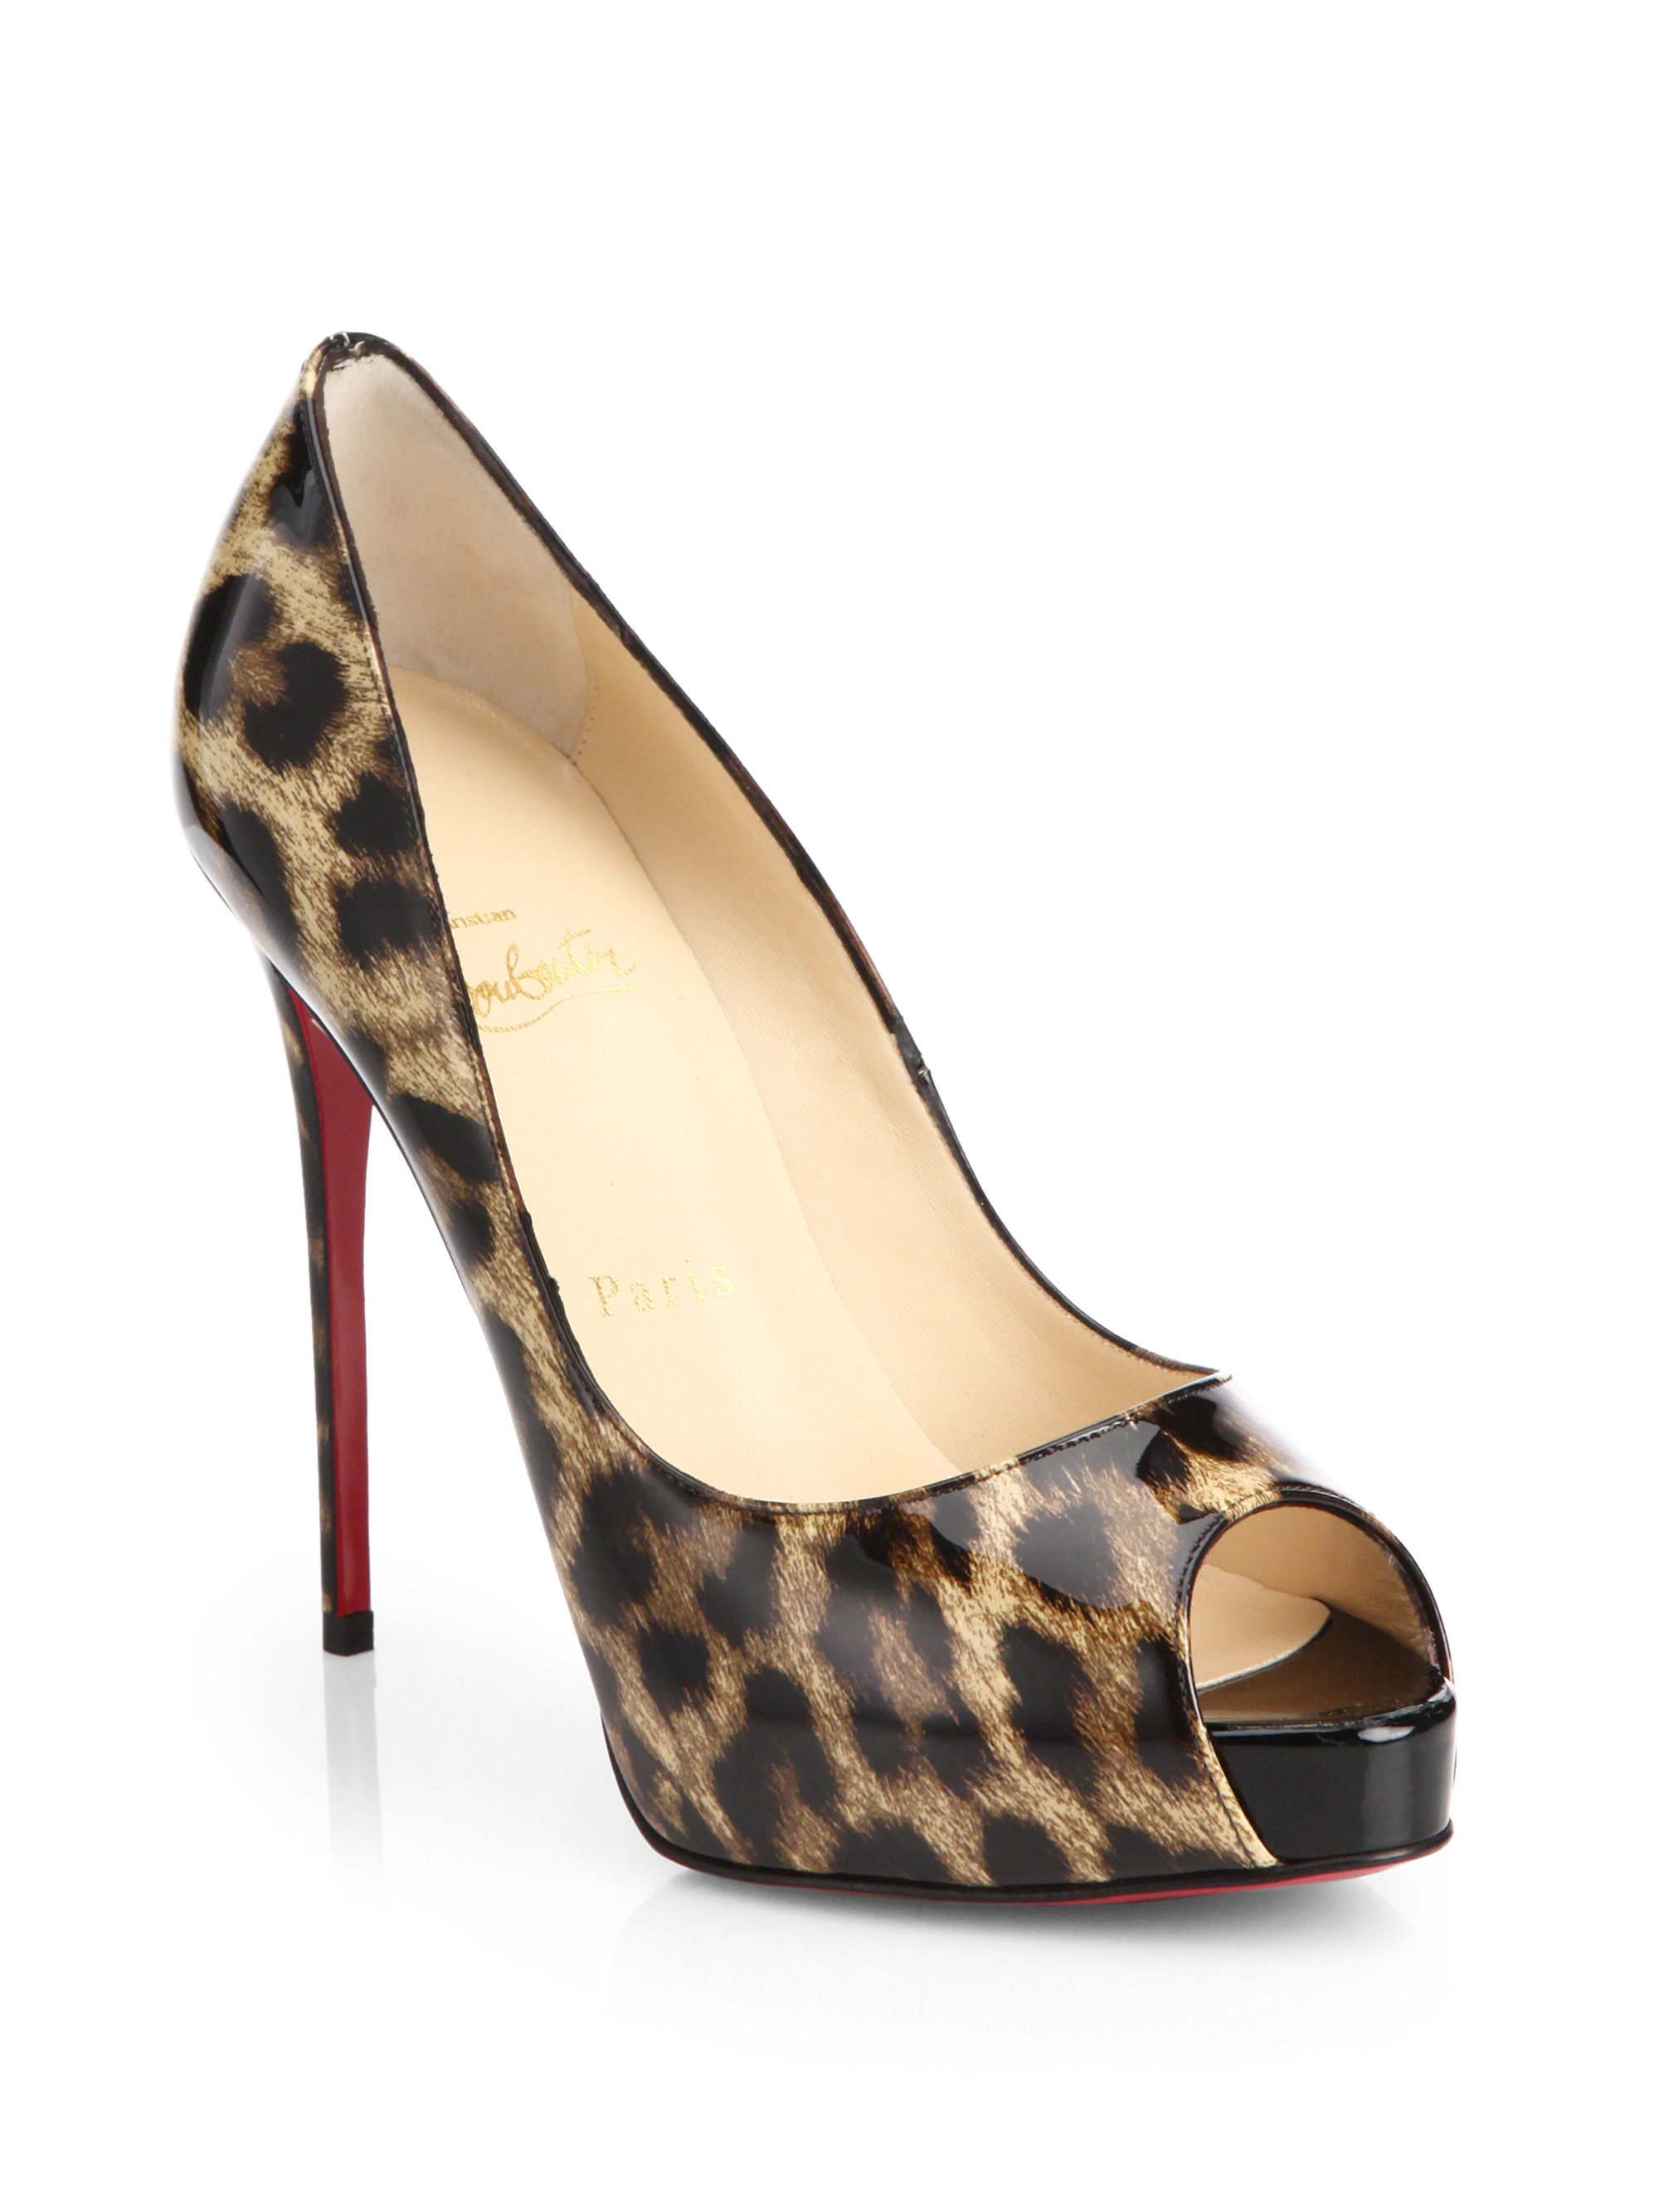 christian louboutin leopard heels